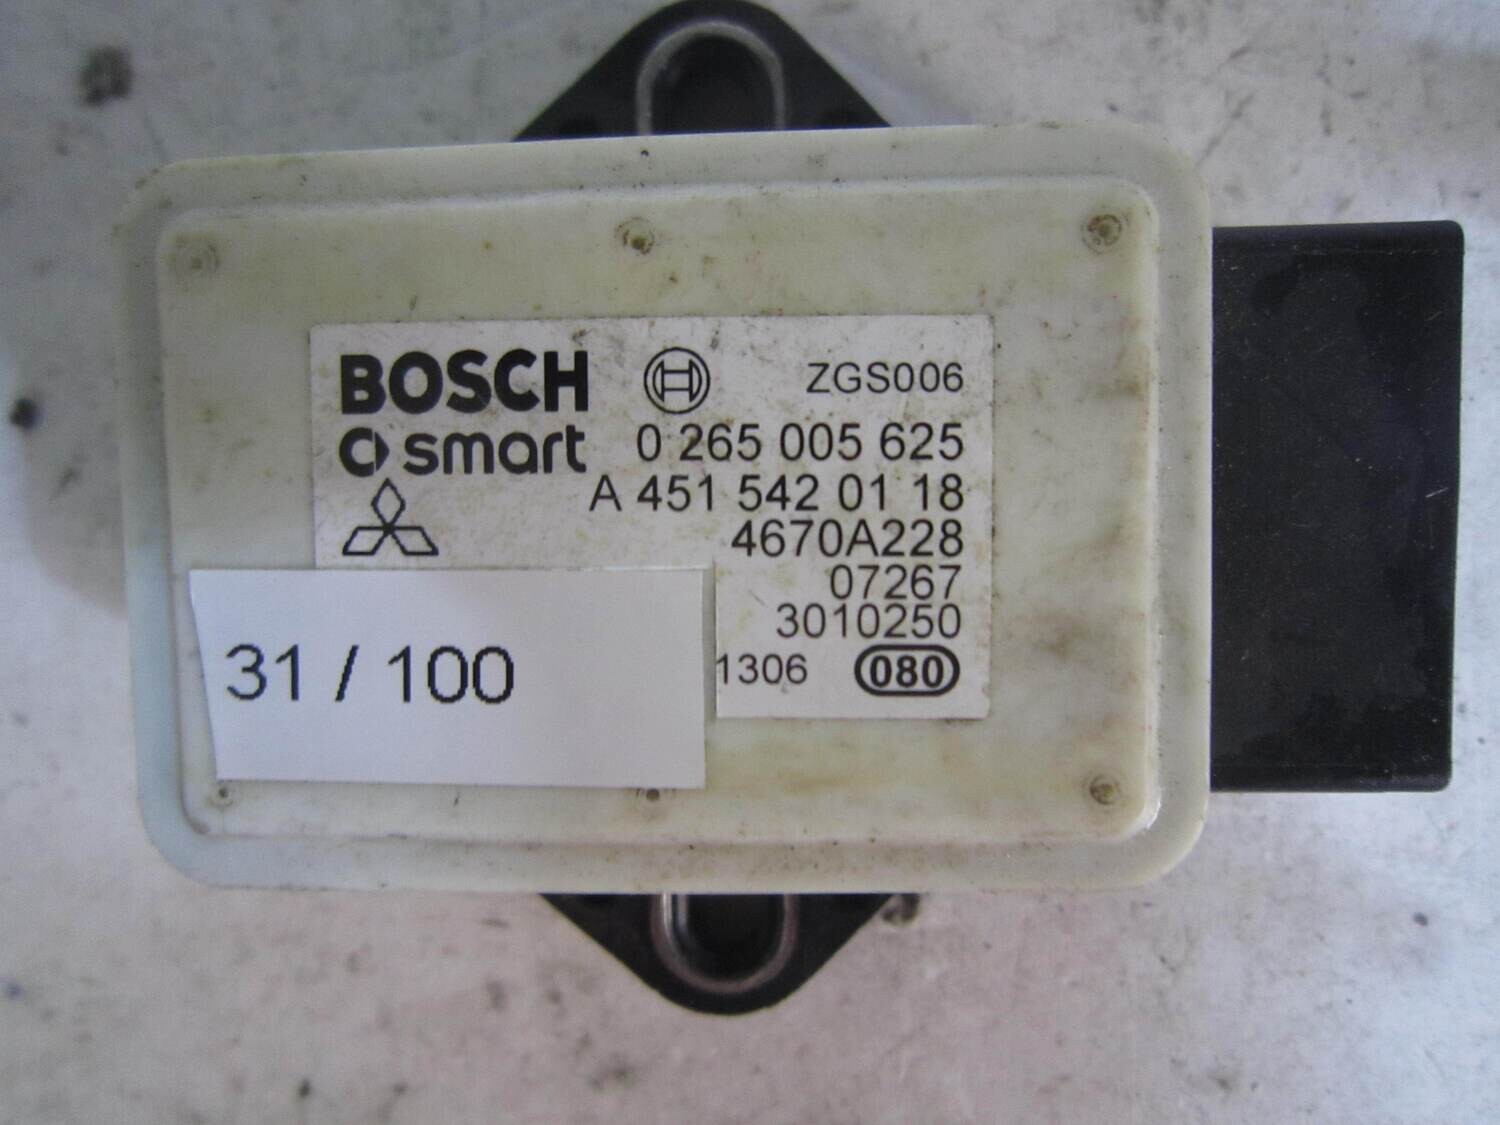 31-100 Sensore Antimbardata Bosch 0 265 005 625 0265005625 A 451 542 01 18 A4515420118 4670A228 FIAT Generica DUCATO